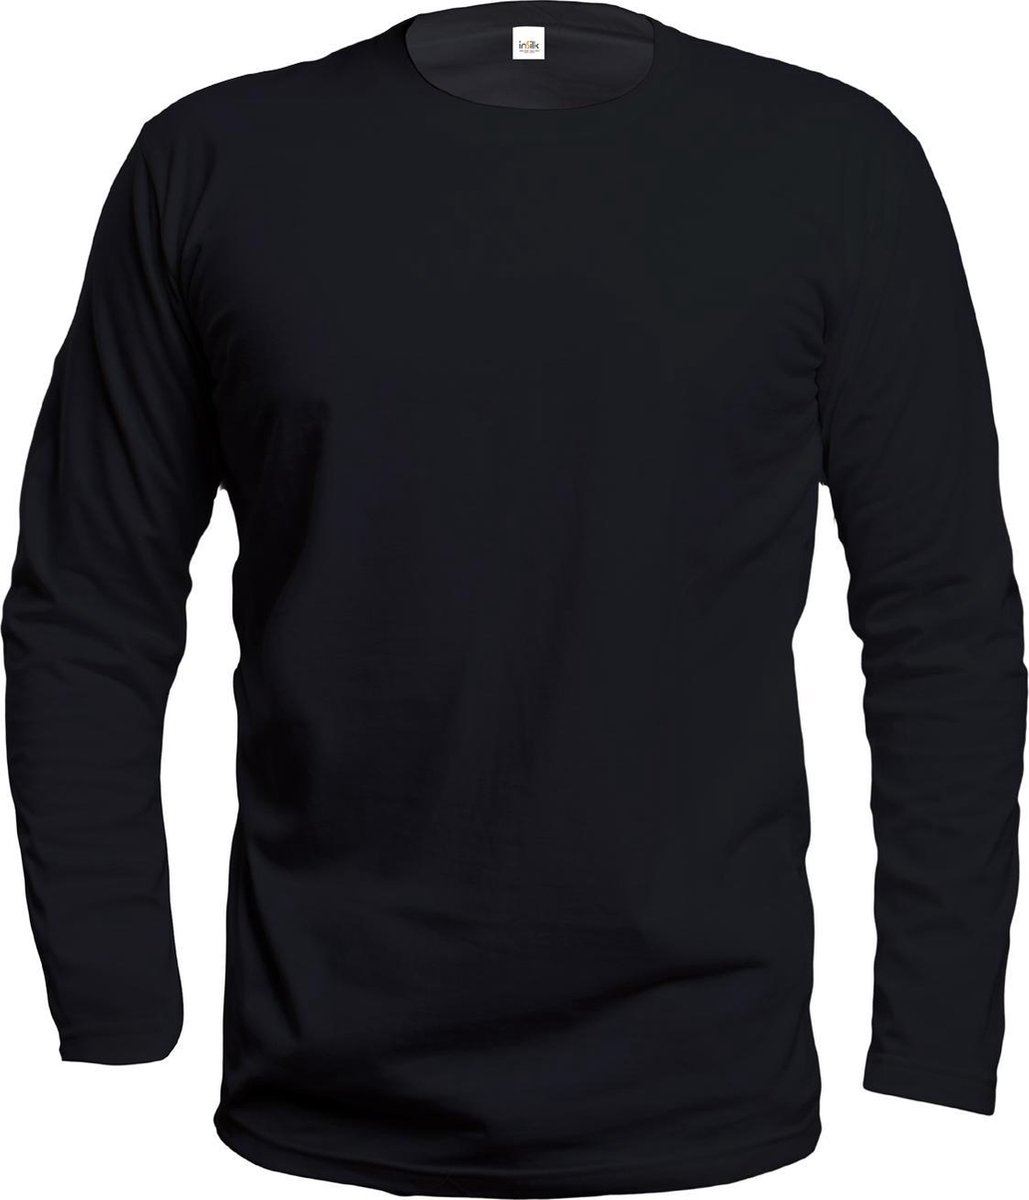 Zijden Heren Shirt Lange Mouw Zwart Extra Large - 100% Zijde